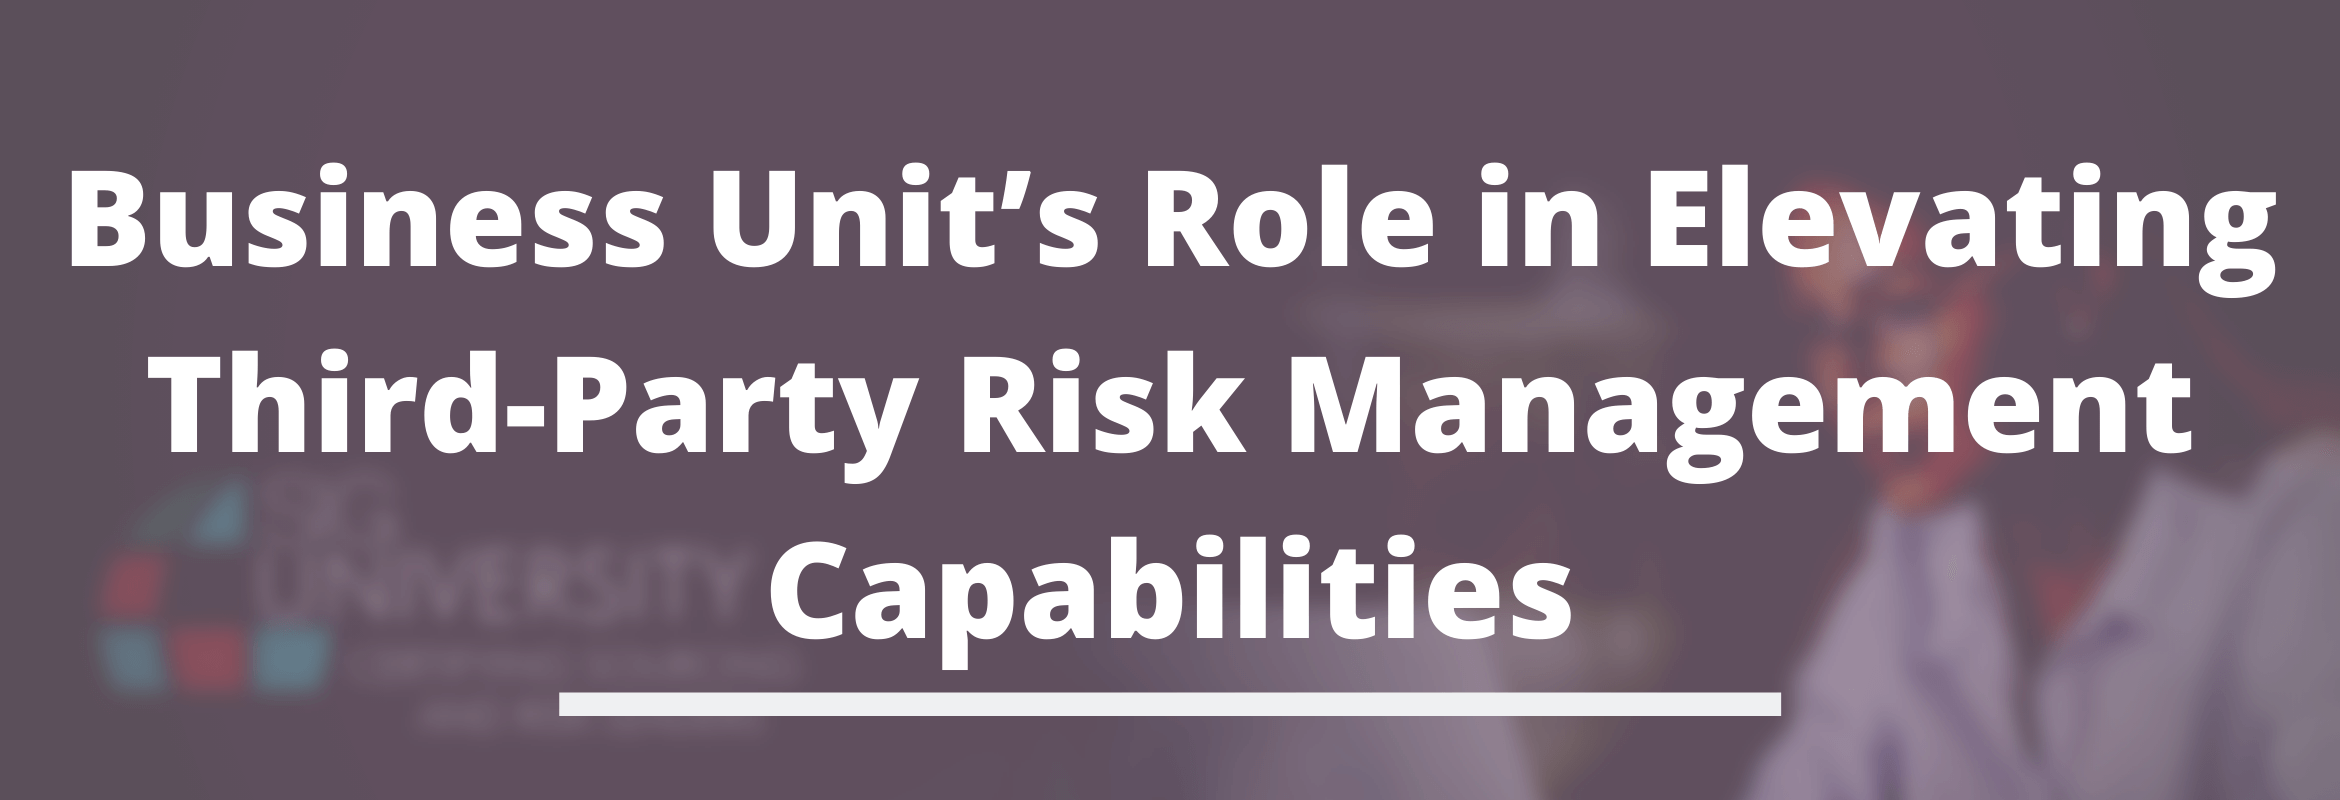 Third-Party Risk Management business unit